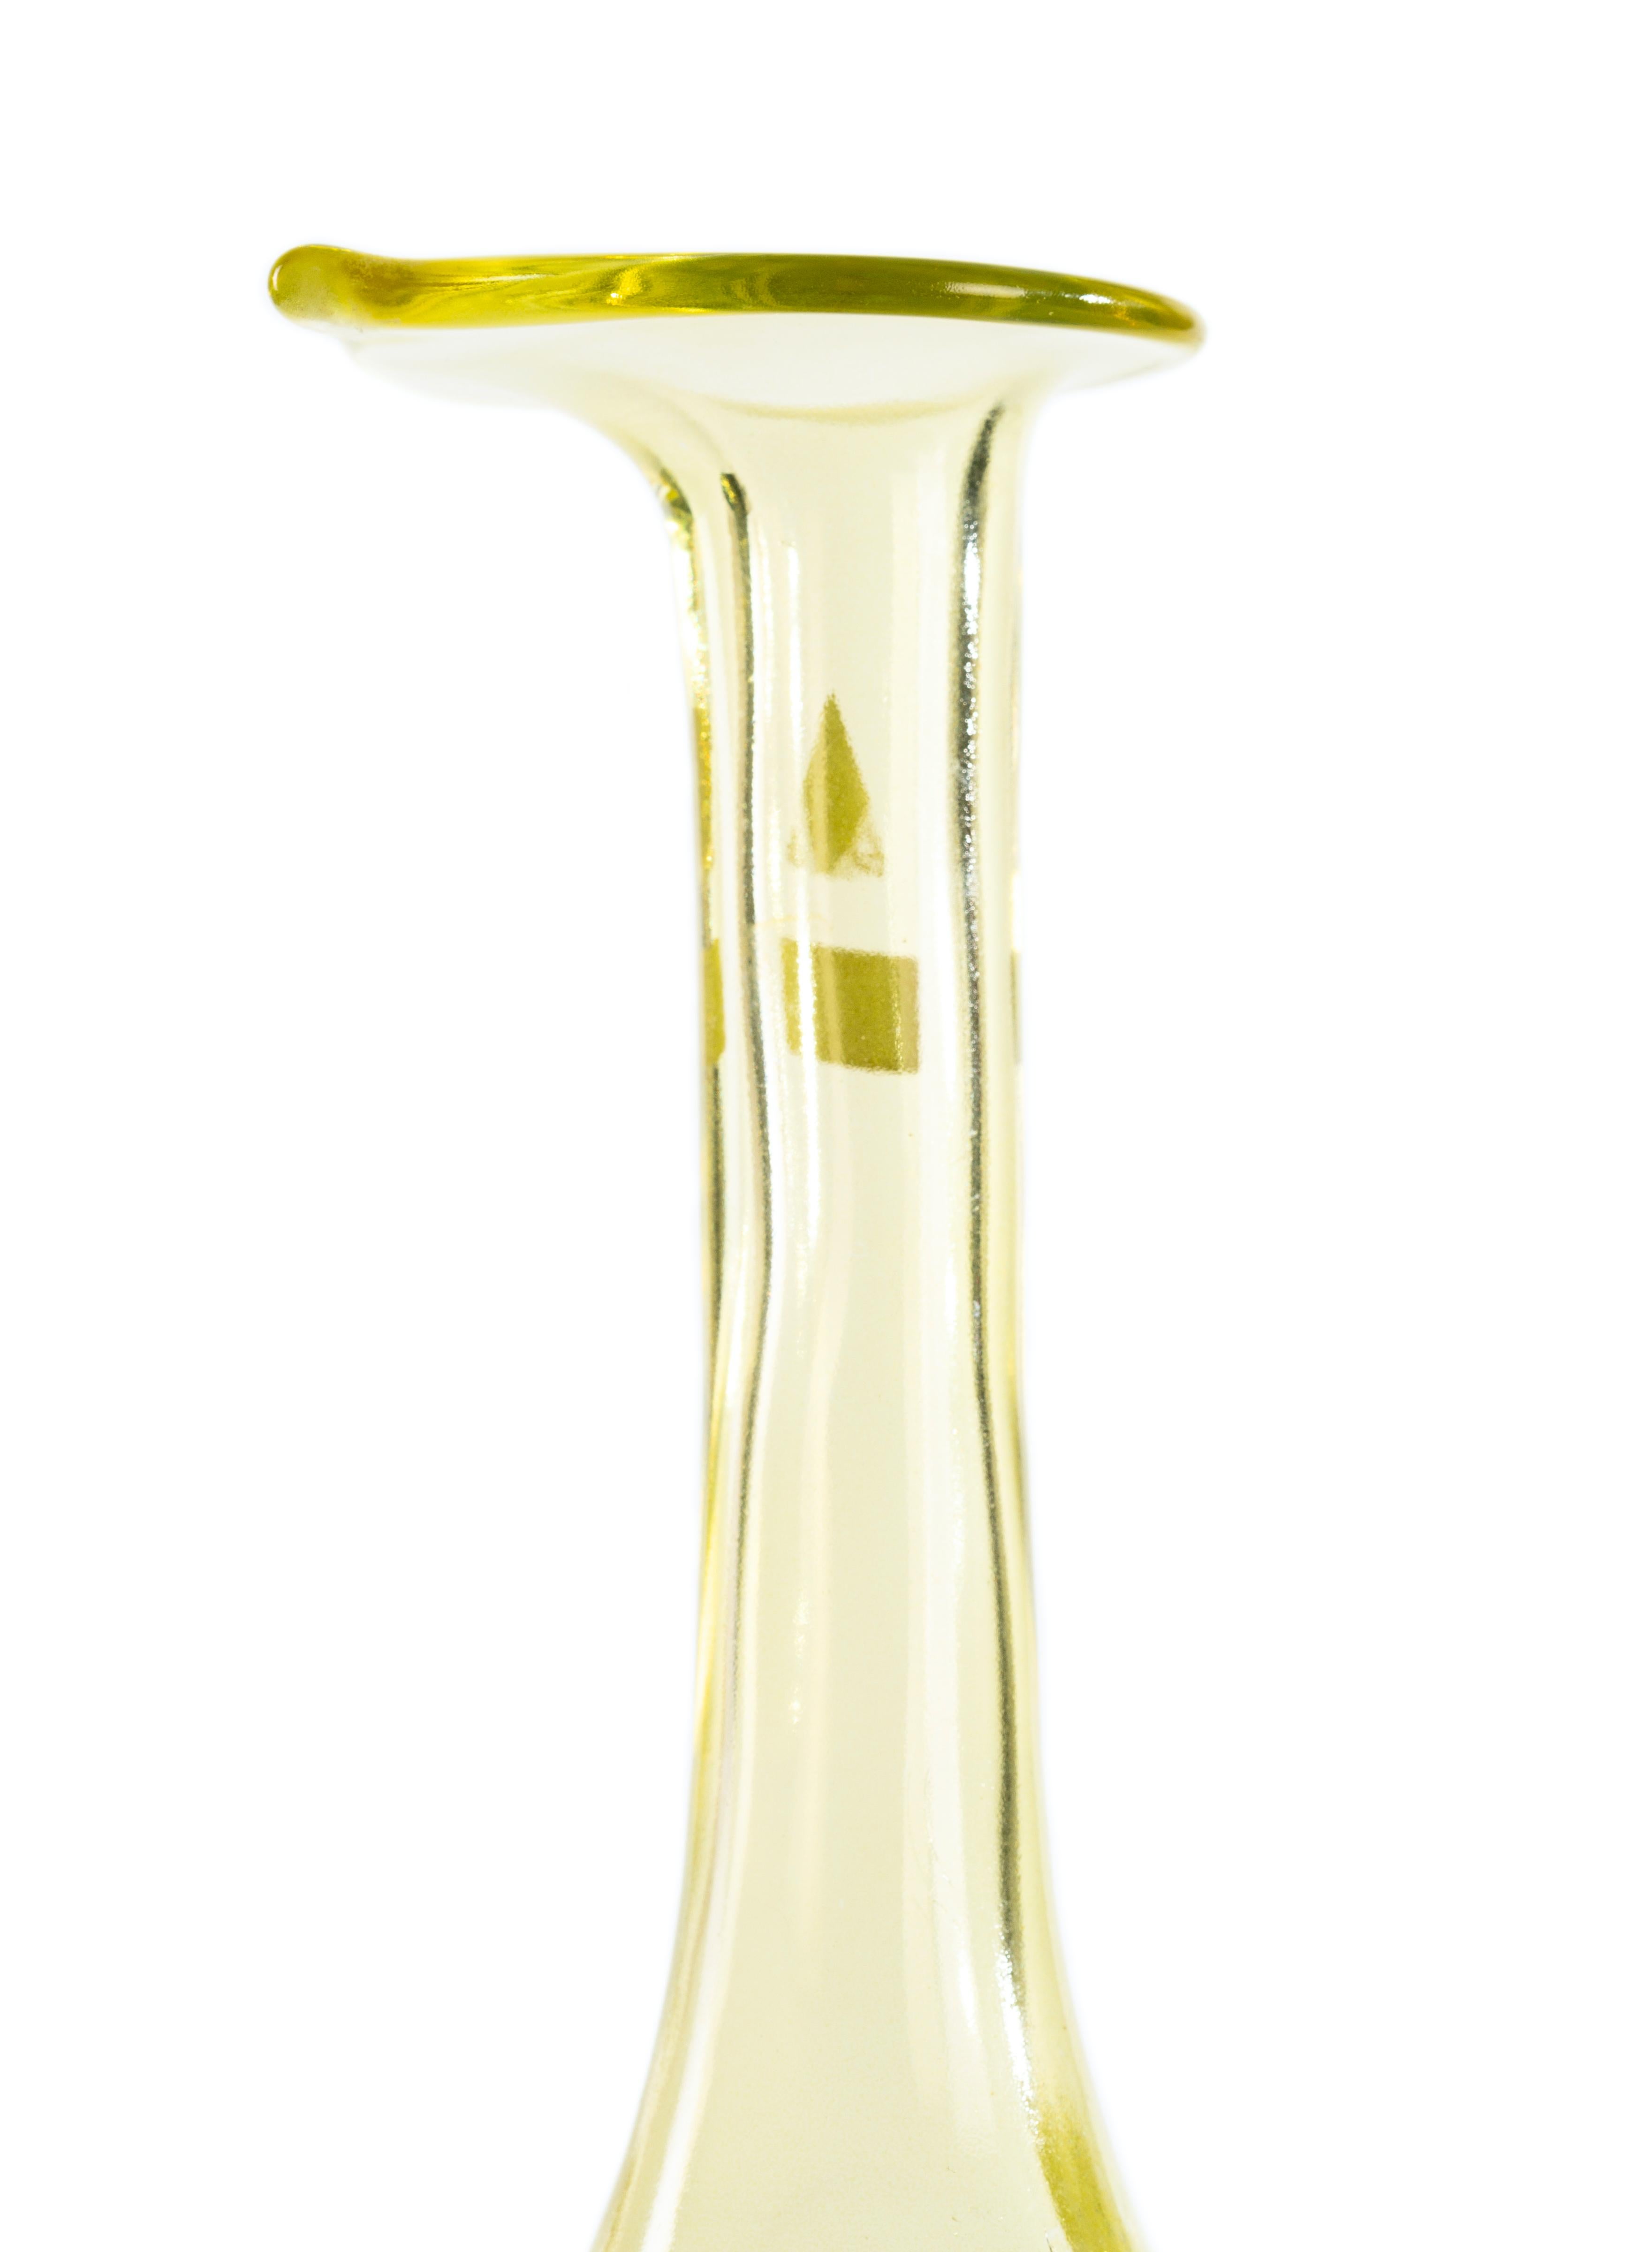 Ce vase en cristal est un grand et beau vase avec un corps bulbeux et un long cou terminé par une bouche en forme de lys. Le cristal est de couleur jaune paille et présente un chapeau irrégulier en forme de toile d'araignée qui décore le corps vers